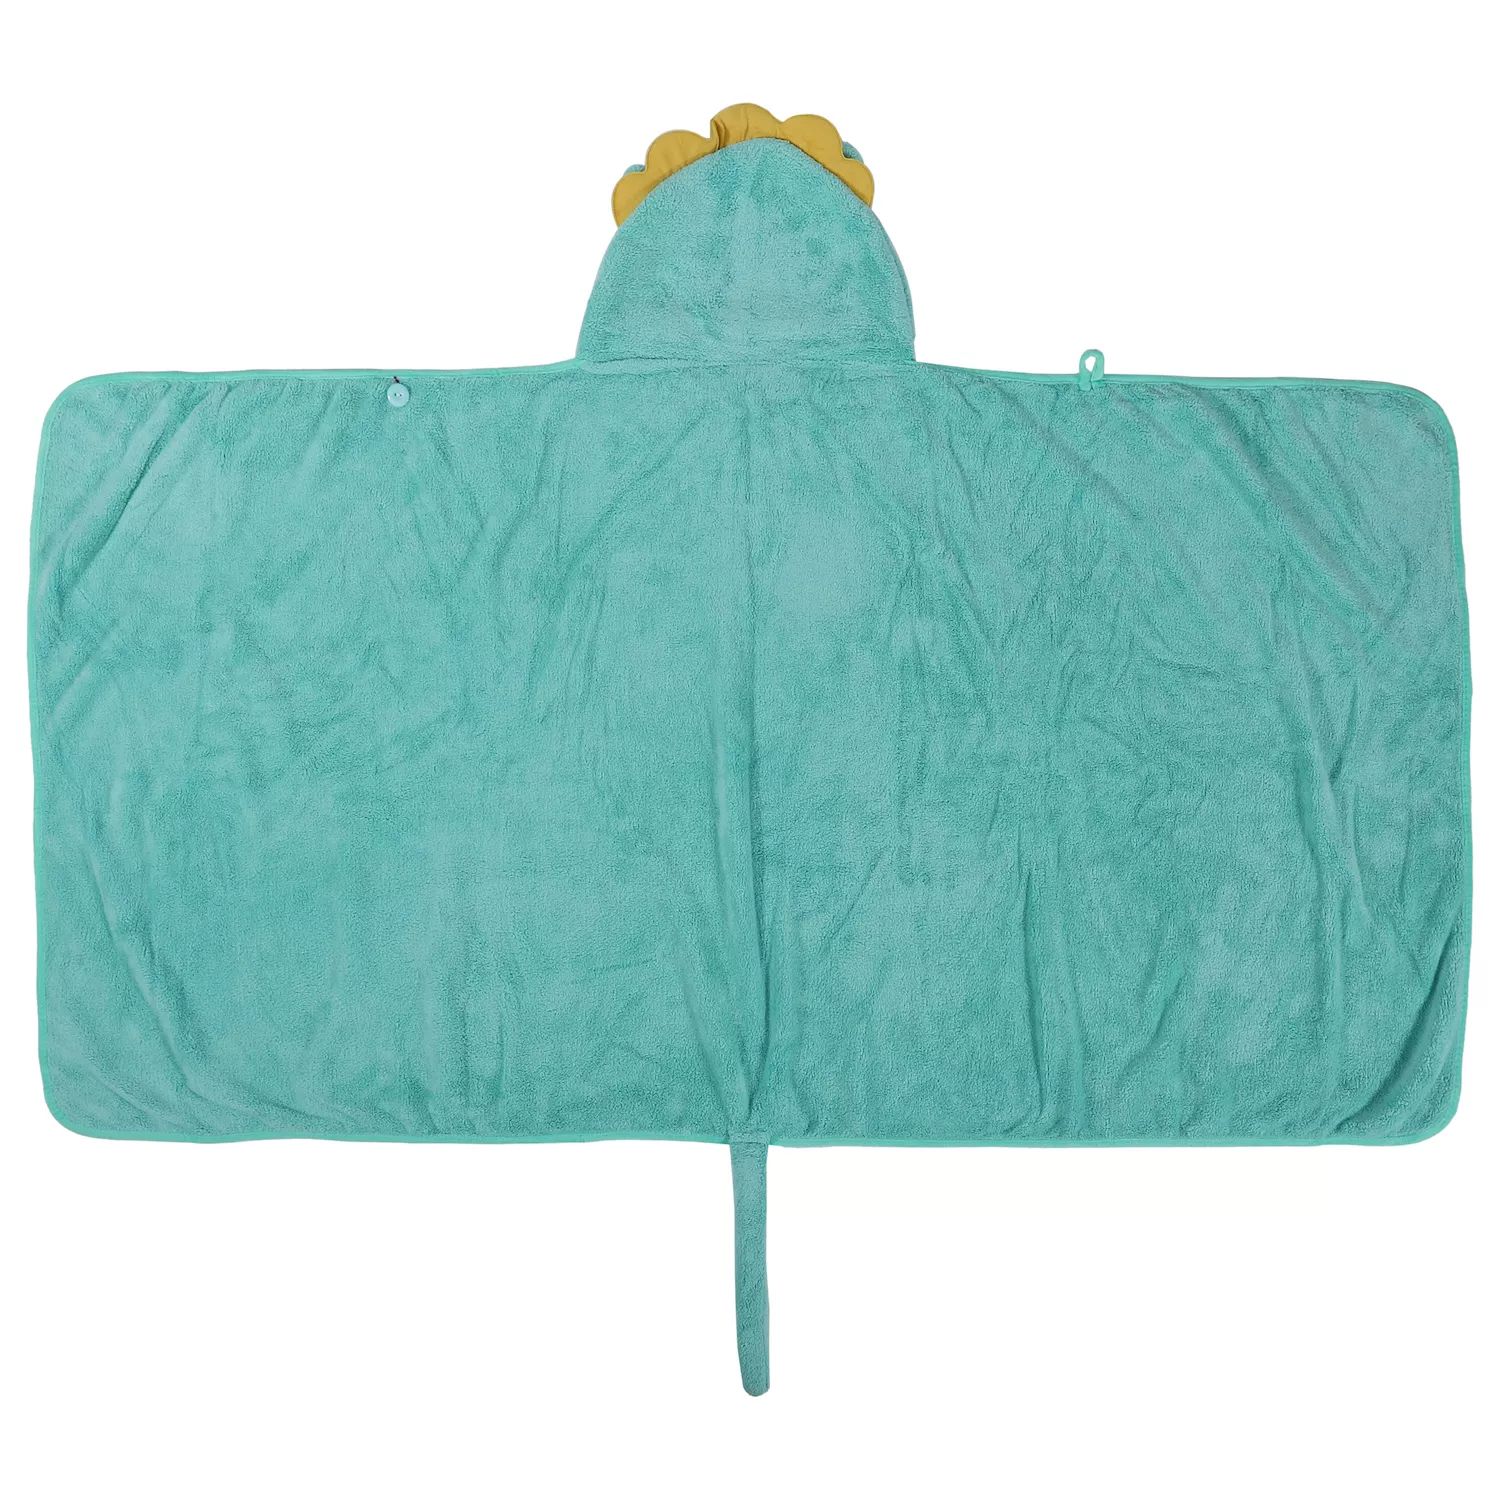 Мягкое впитывающее полотенце с капюшоном из кораллового флиса для ванной комнаты, светло-зеленое, 53 x 31 дюймов